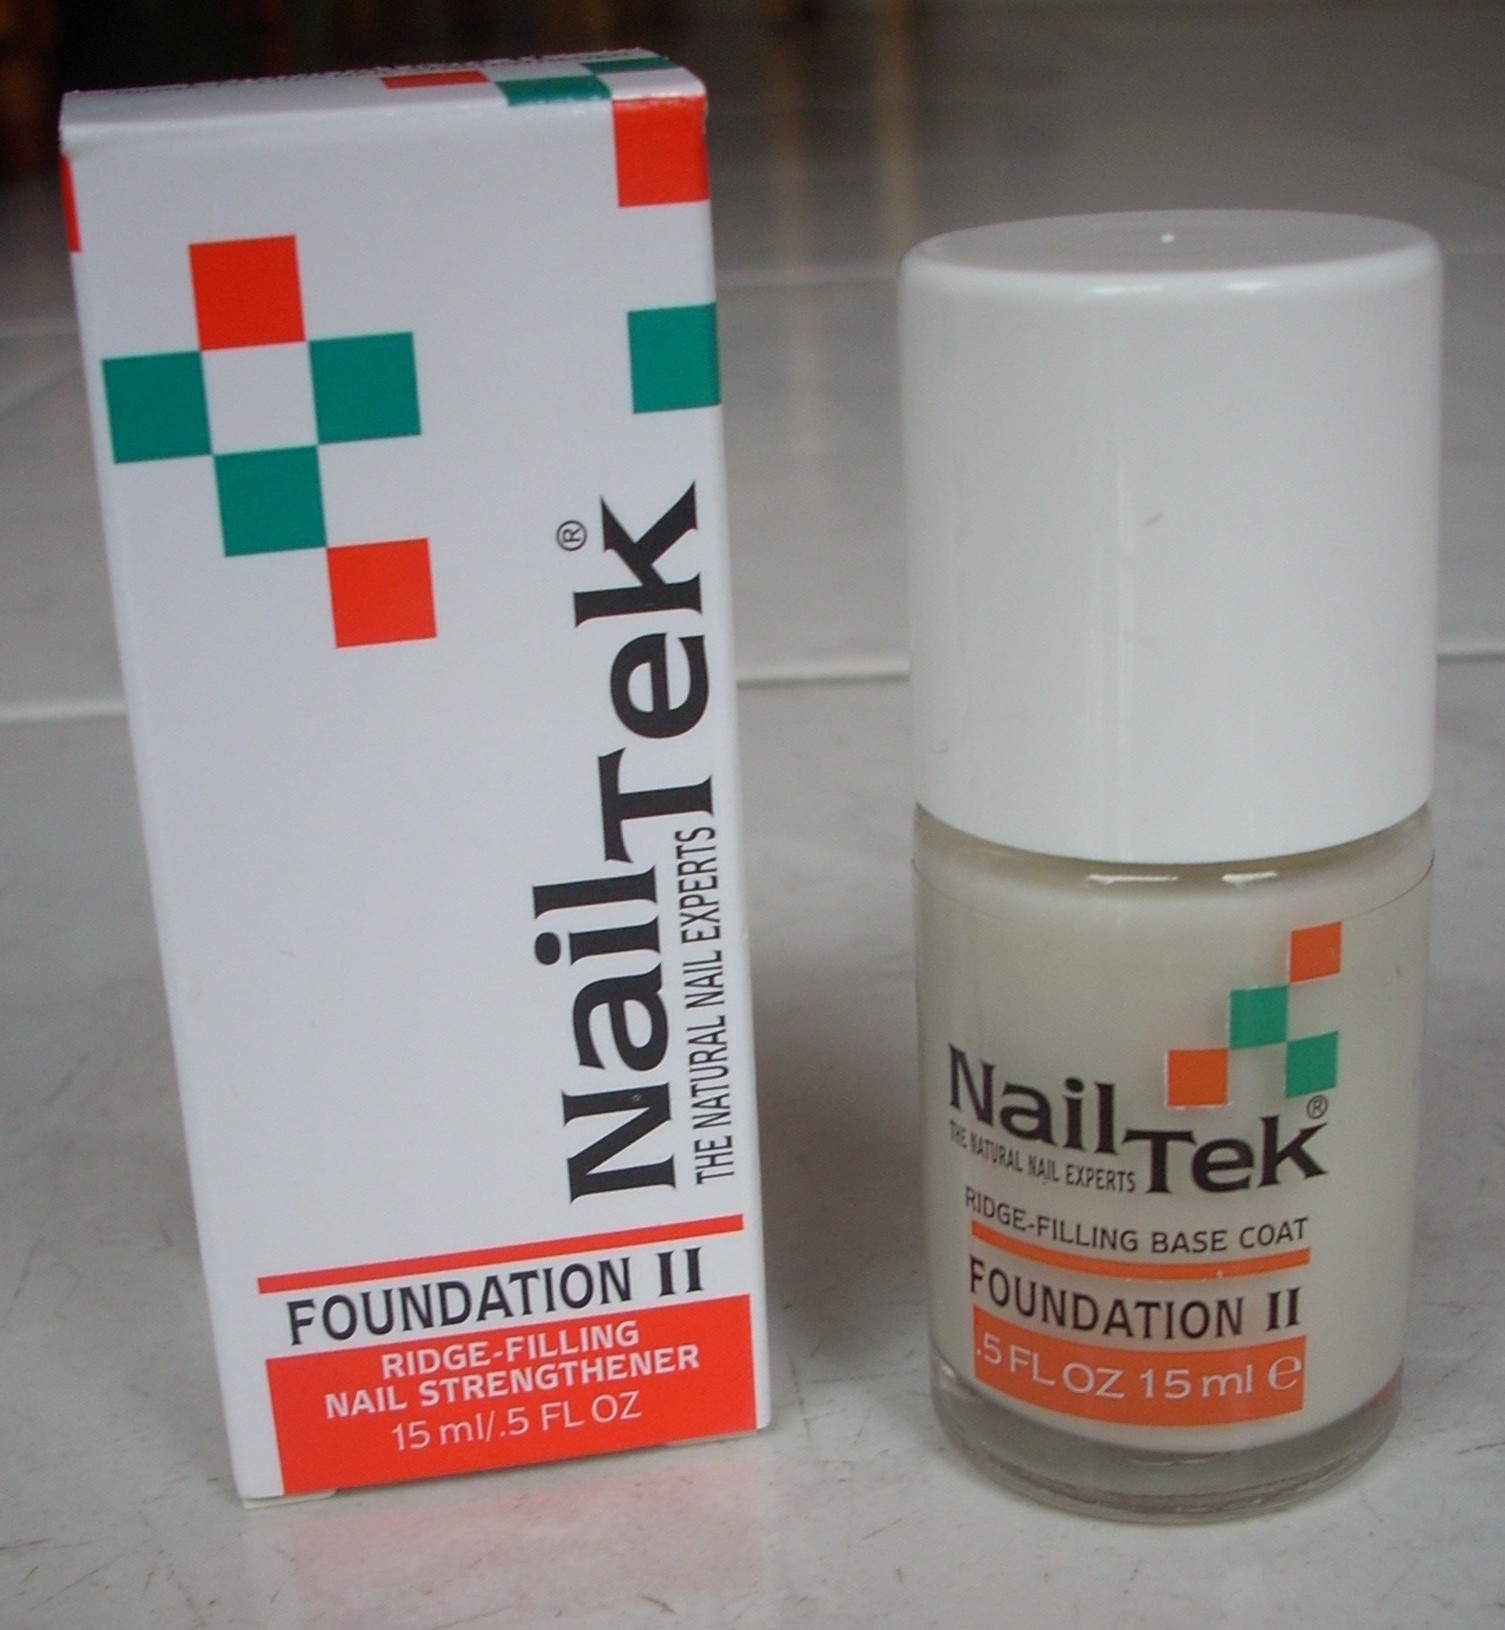 Make-Up Miracles: Nail Tek Foundation II base coat review